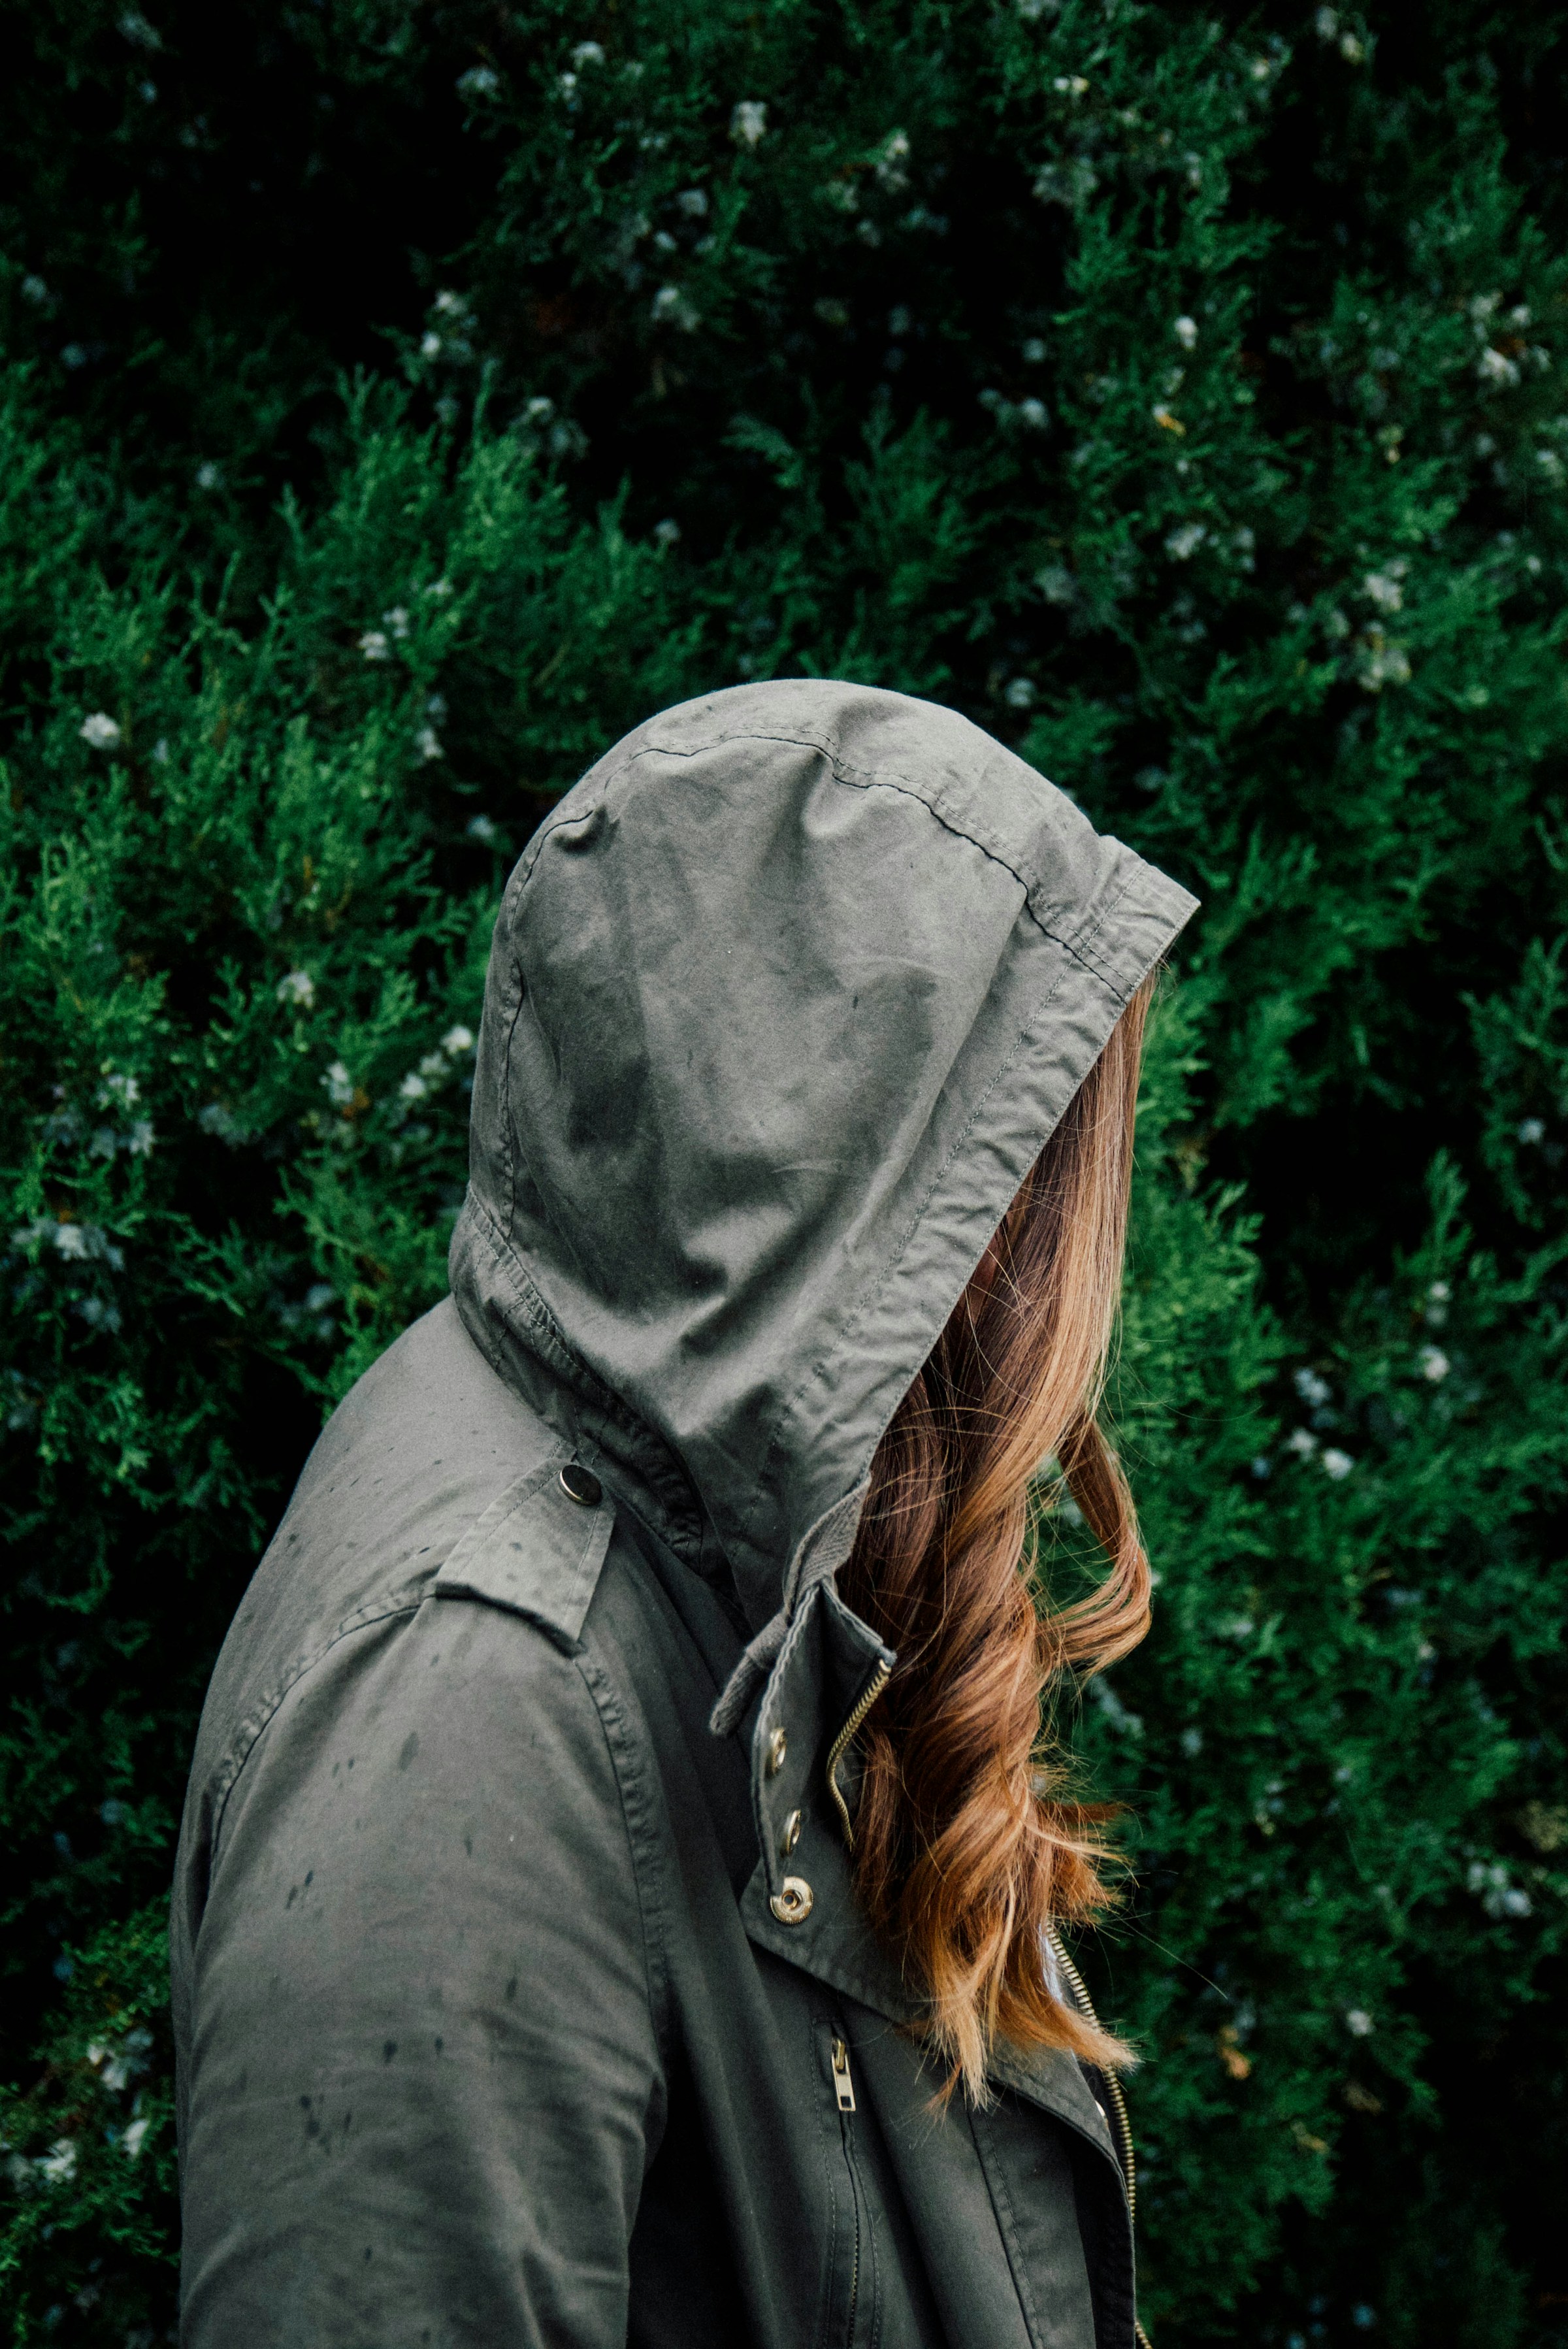 A woman hiding her face | Source: Unsplash